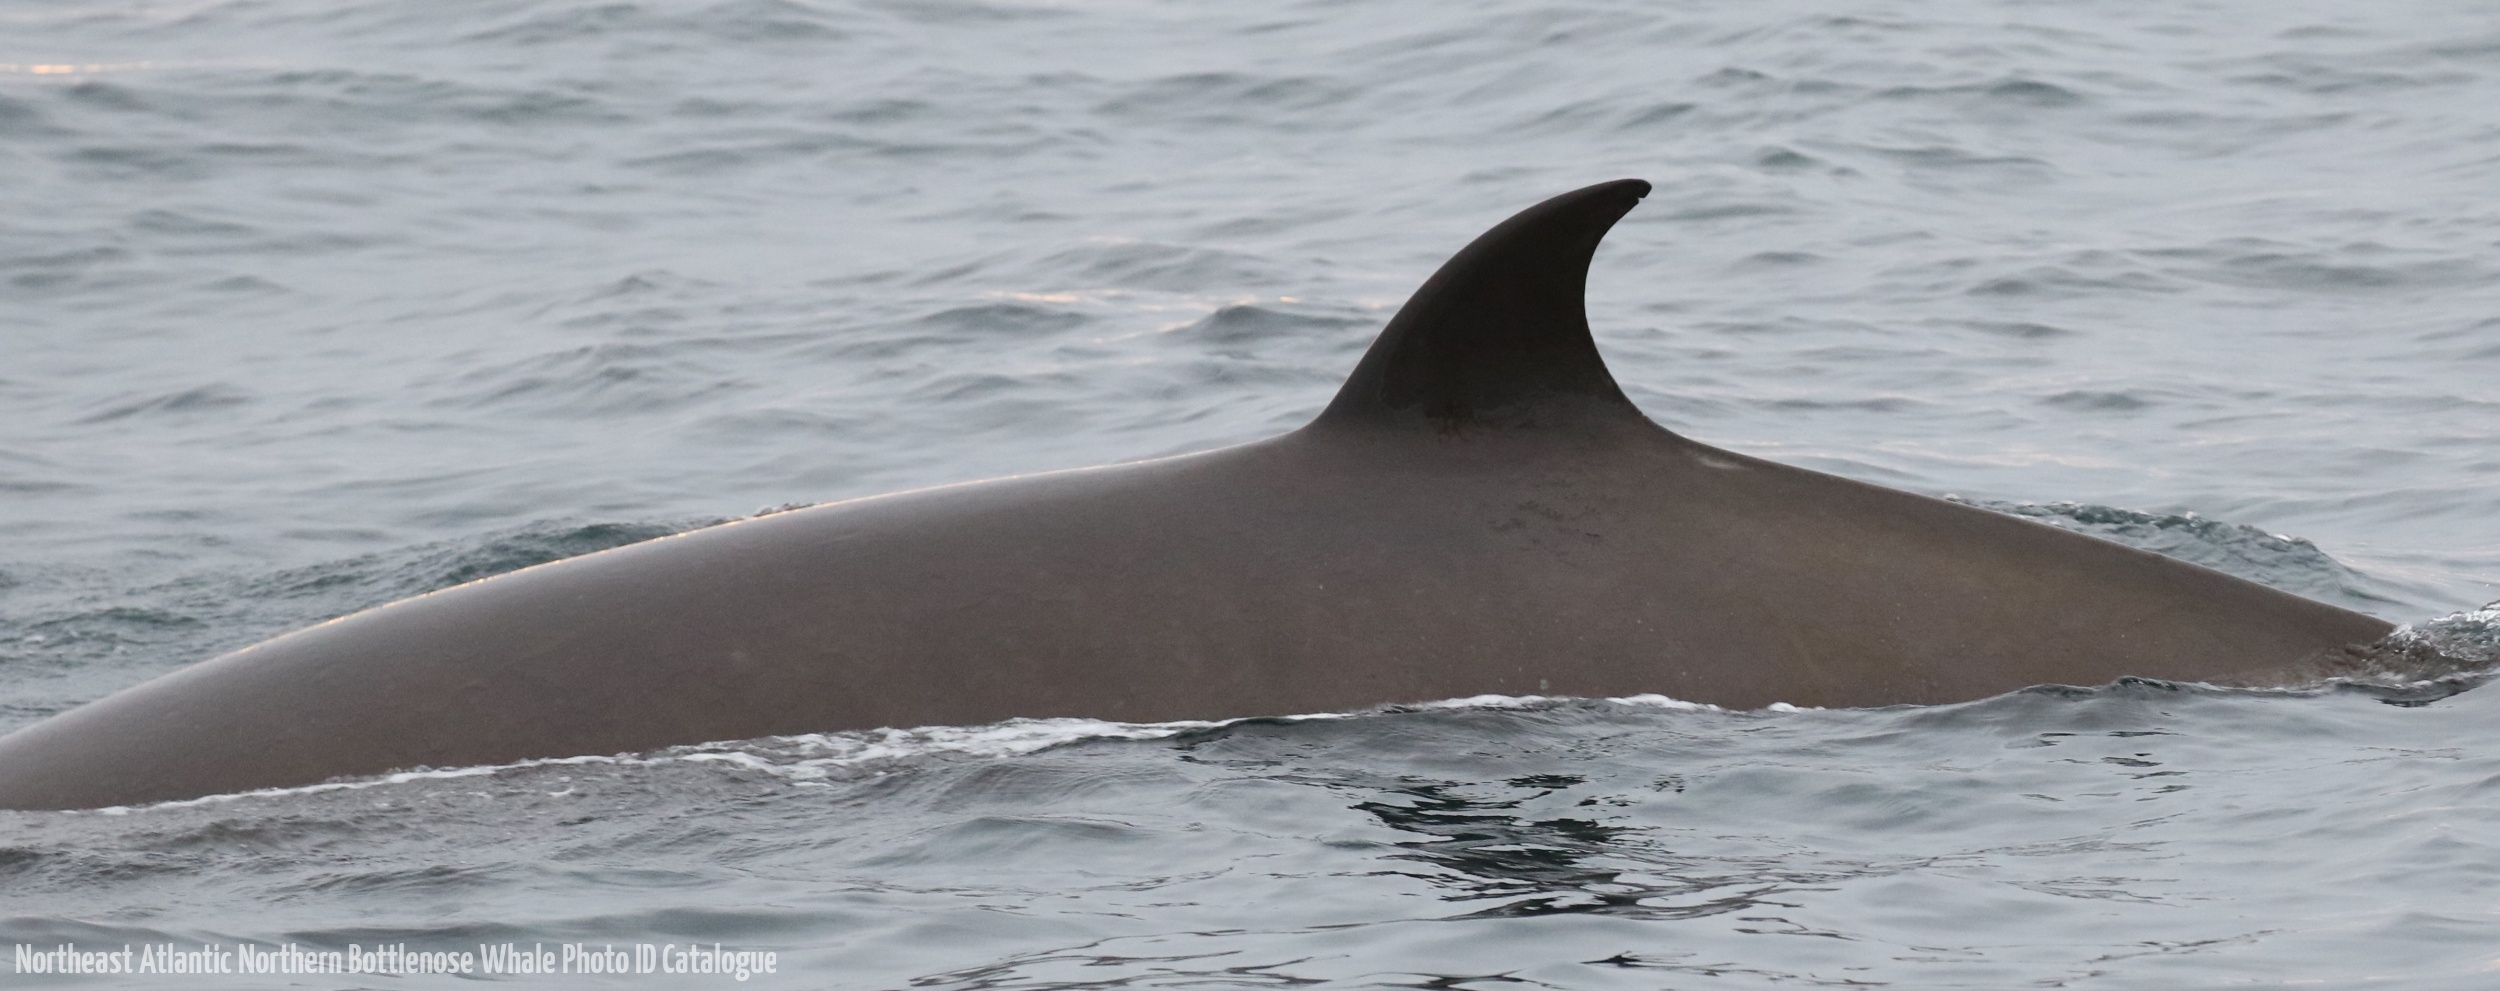 Whale ID: 0161,  Date taken: 18-06-2016,  Photographer: Eilidh Siegal